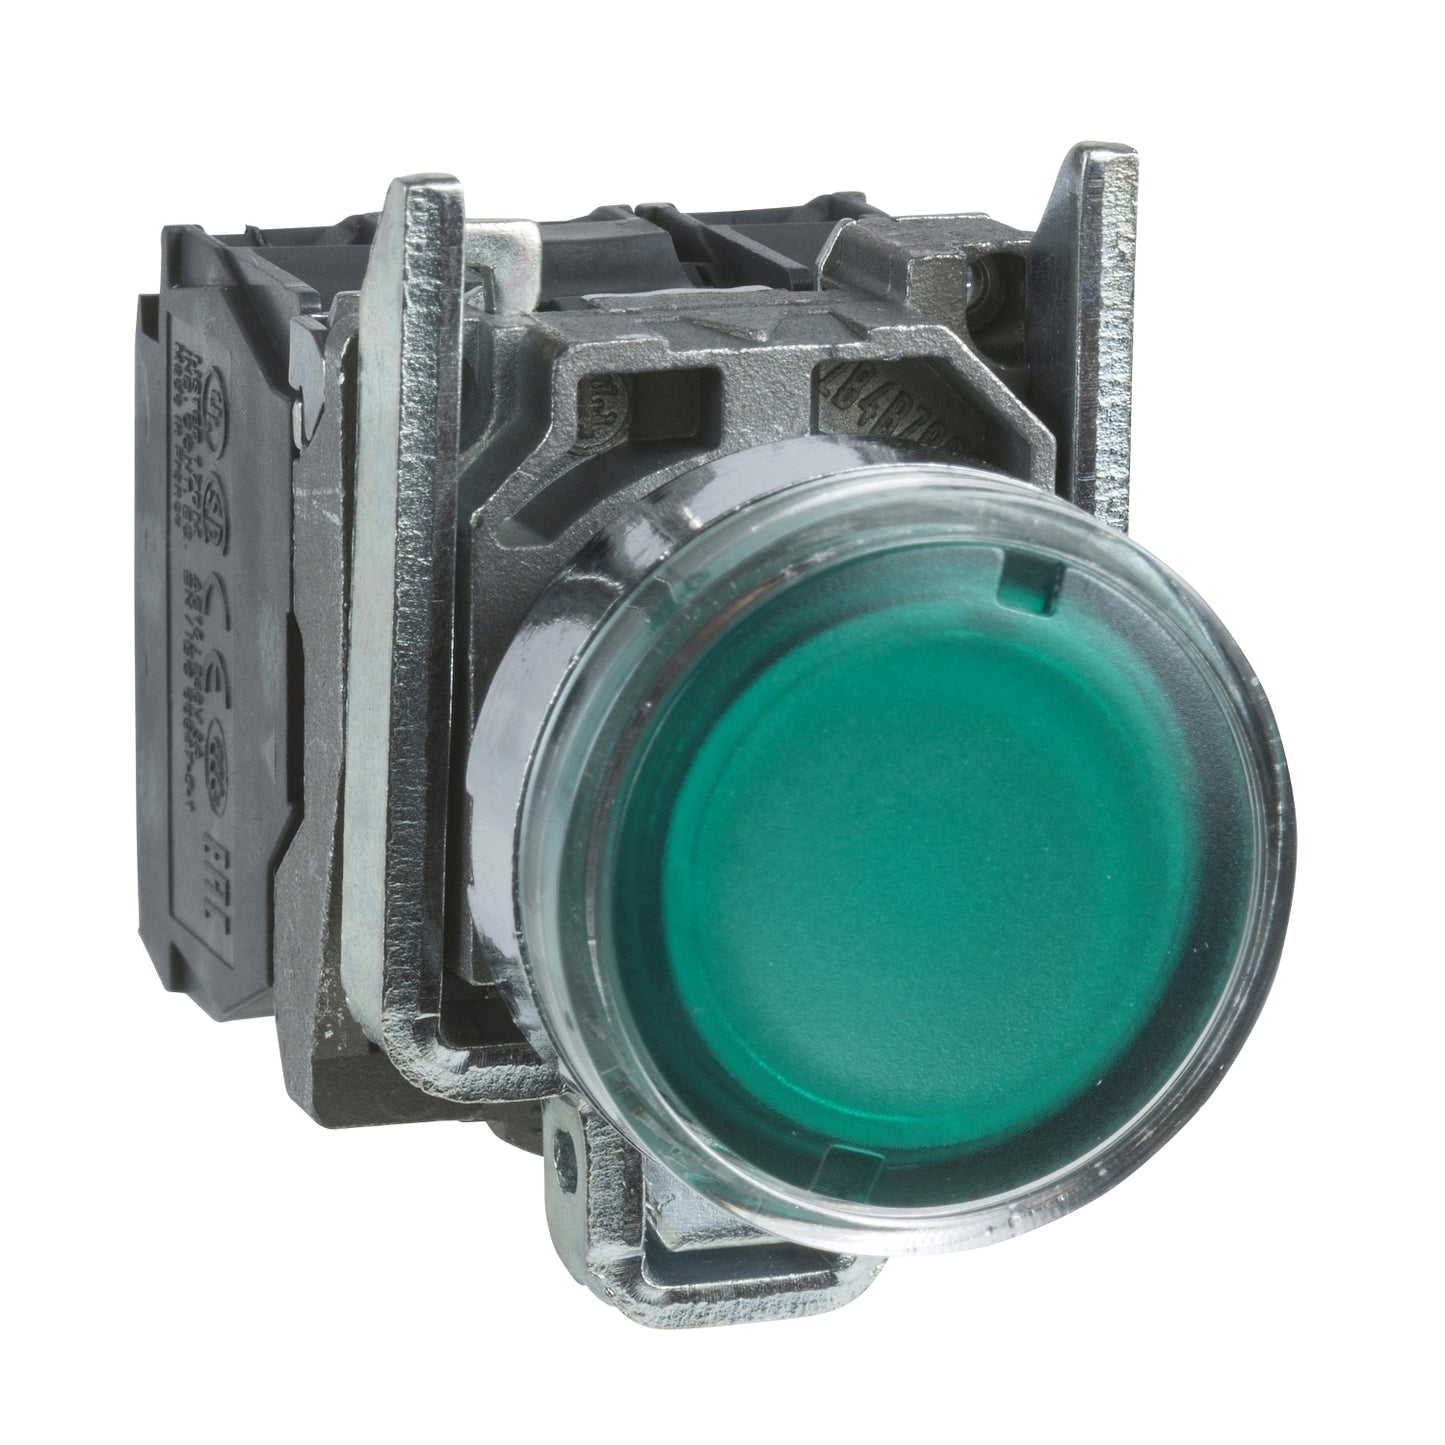 Pulsador Completo Luminoso LED de Marca Schneider Electric de Serie Harmony XB4 (XB4BW33G5) con ø22m de Montaje, Cuerpo Metálico, Tipo de Operatorio Retorno de Resorte, Rasante, Alimentación 120V, Color Verde, Contactos 1NA+1NC.